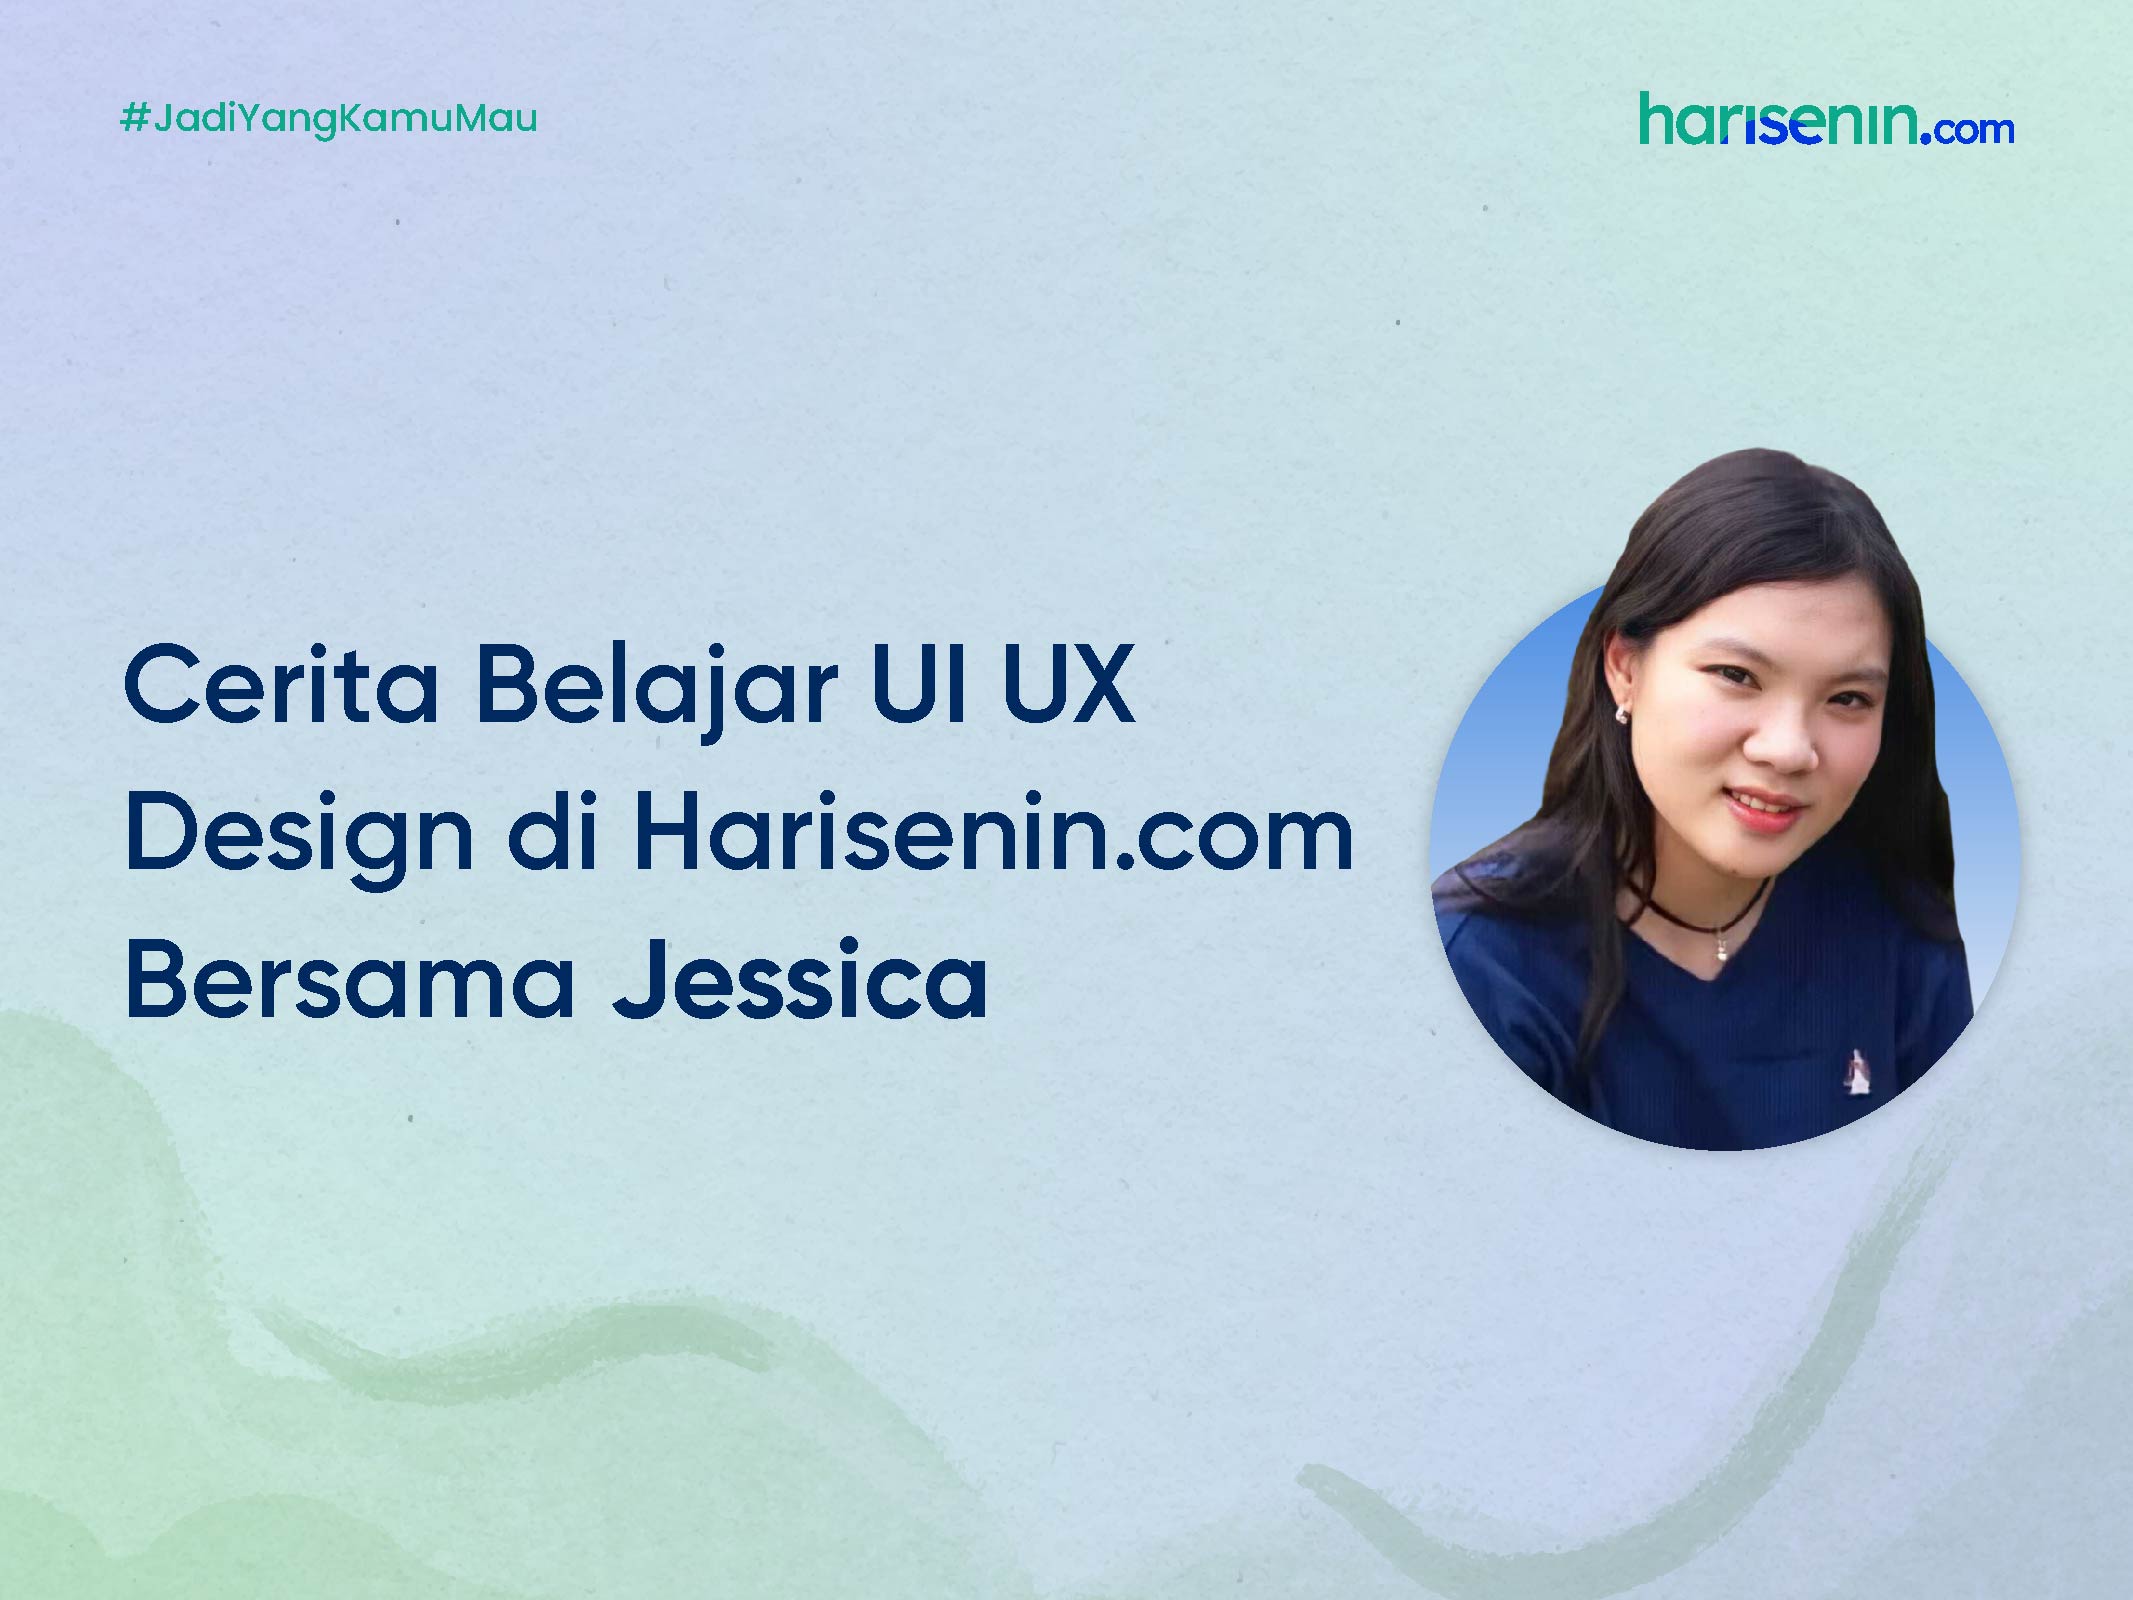 Cerita Belajar UI UX Design di Harisenin.com Bersama Jessica